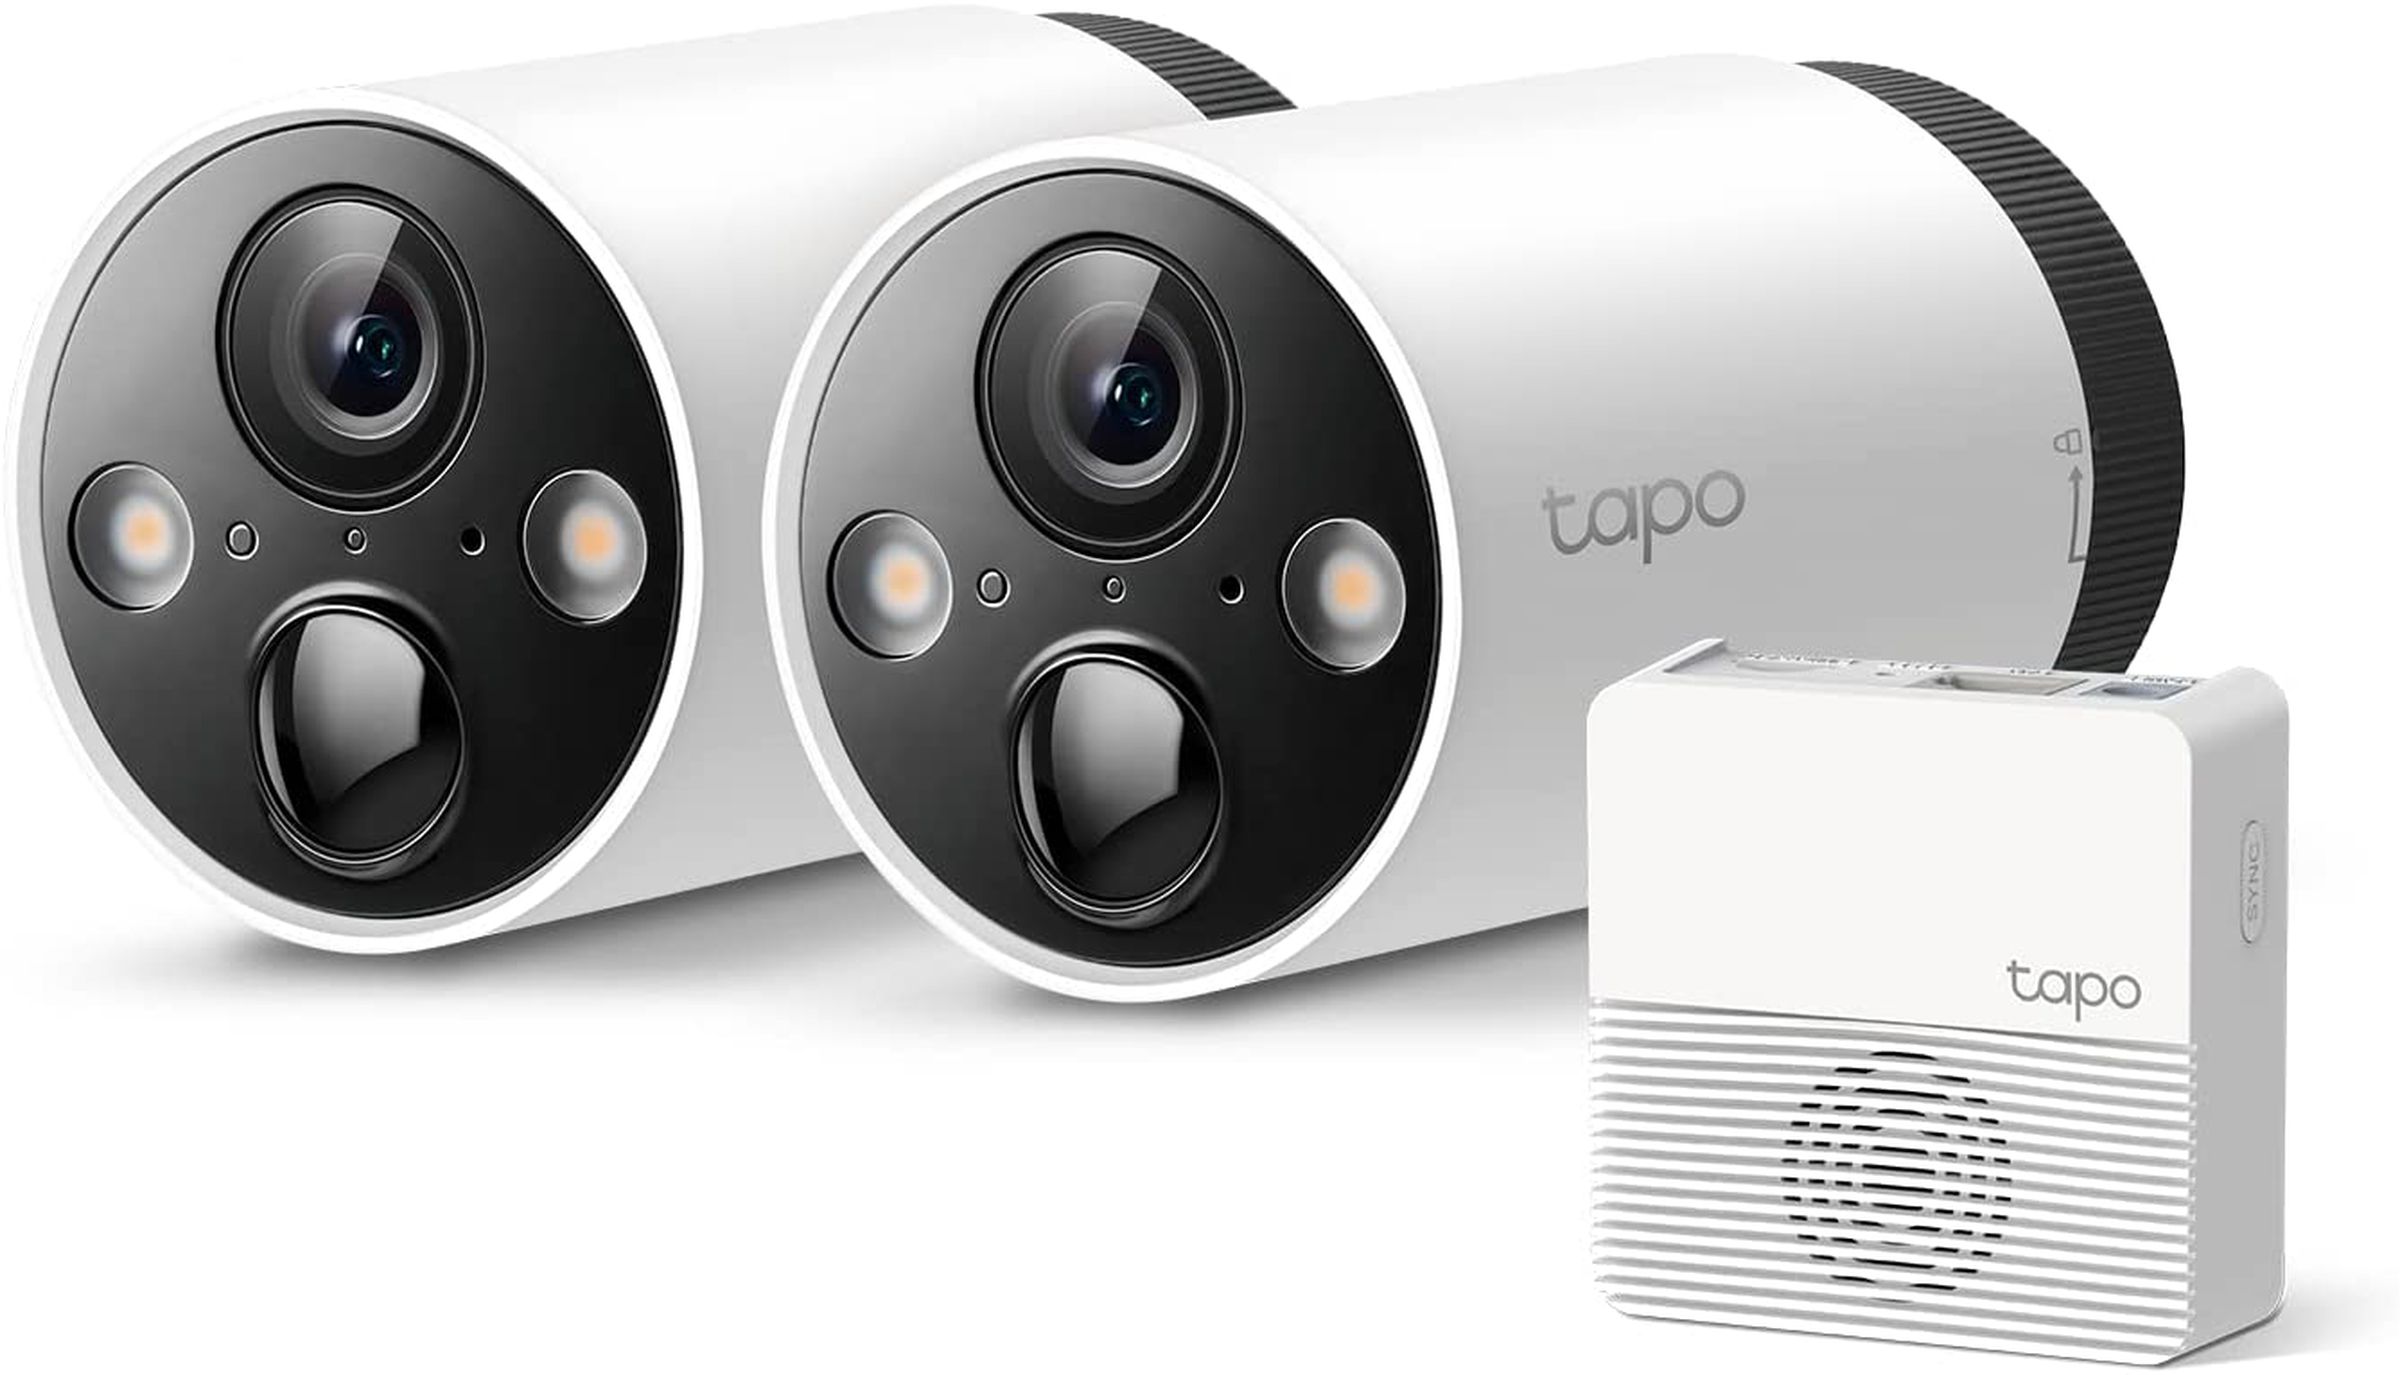 هاب دوربین Tapo باید به اترنت وصل شود و دارای یک کارت micro-SD برای ذخیره سازی محلی باشد.